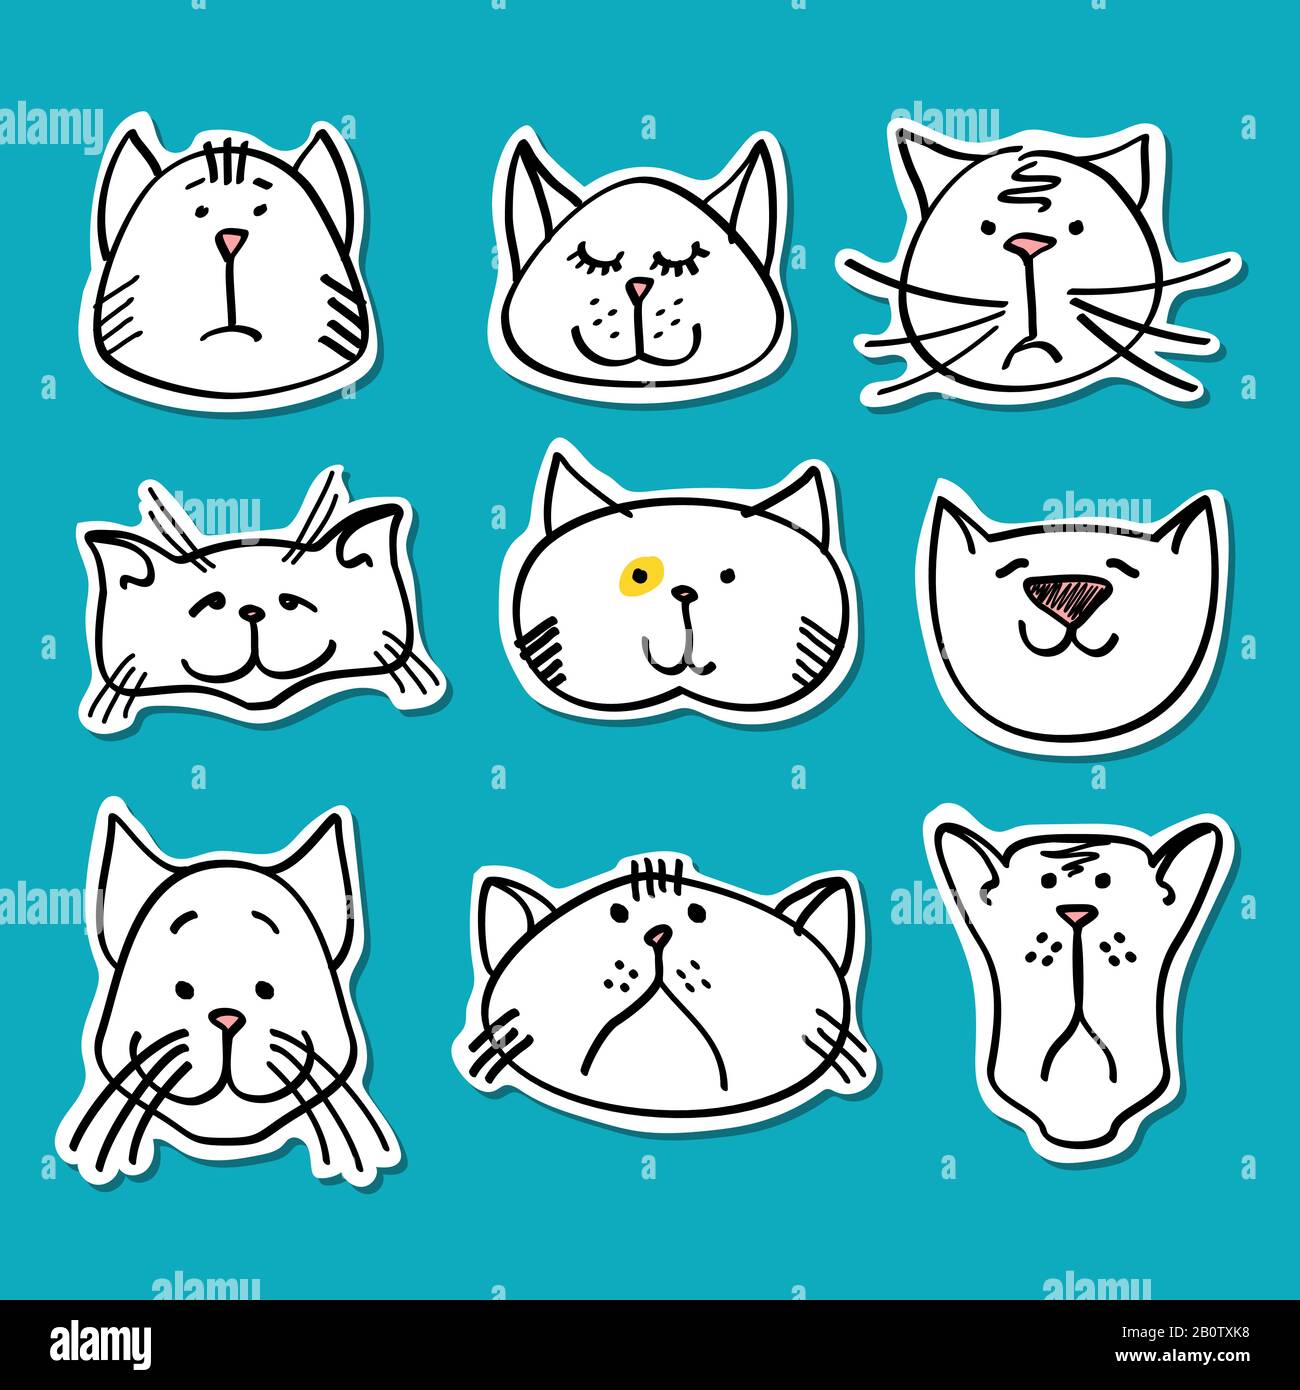 Cute doodle cats stickers collection: Tỏa sáng phong cách của bạn với bộ sưu tập những hình ảnh mèo dễ thương và đặc biệt trên những nhãn dán xinh xắn. Tận hưởng niềm vui làm đẹp cho ngôi nhà và màn hình điện thoại của bạn với những họa tiết dễ thương chỉ có ở đây. Hãy nhanh tay đến và xem sản phẩm này để tận hưởng sự đáng yêu của các loài mèo.